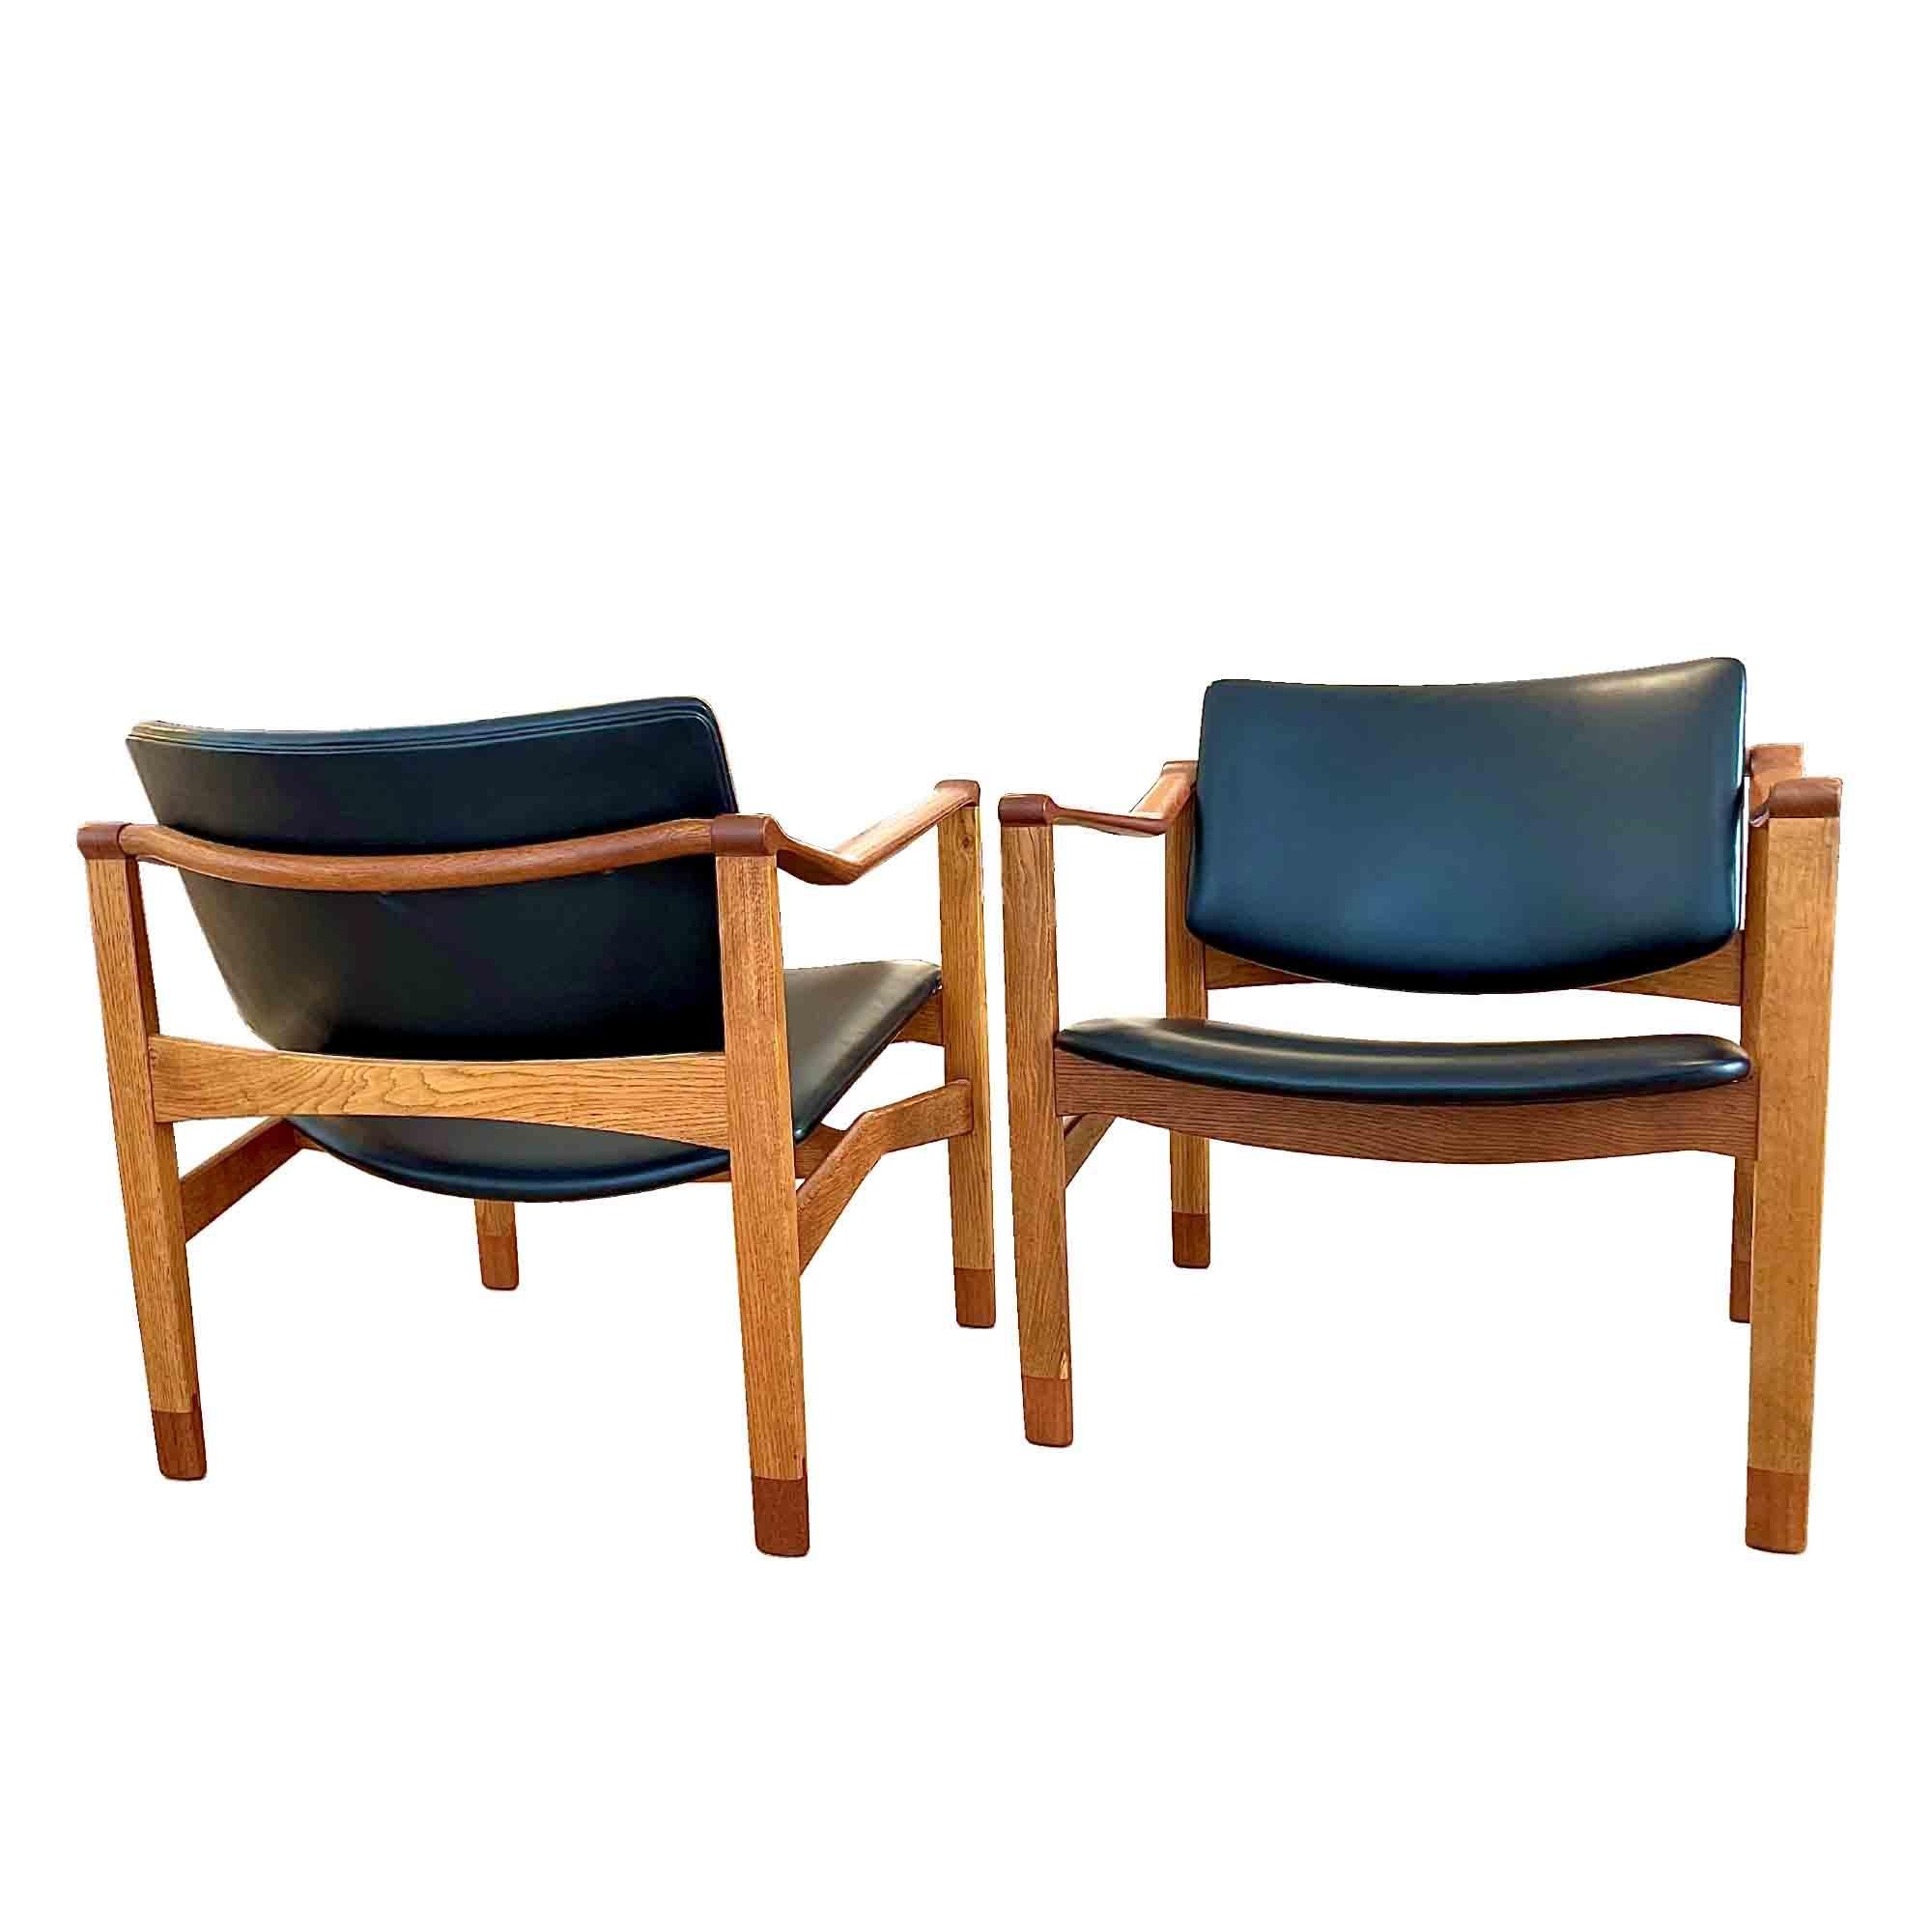 William Watting était un designer de meubles américain qui, installé au Danemark dans les années 1950, produisait des meubles William Watting pour sa propre entreprise. Ses créations se caractérisent par leur simplicité, leur fonctionnalité et leurs